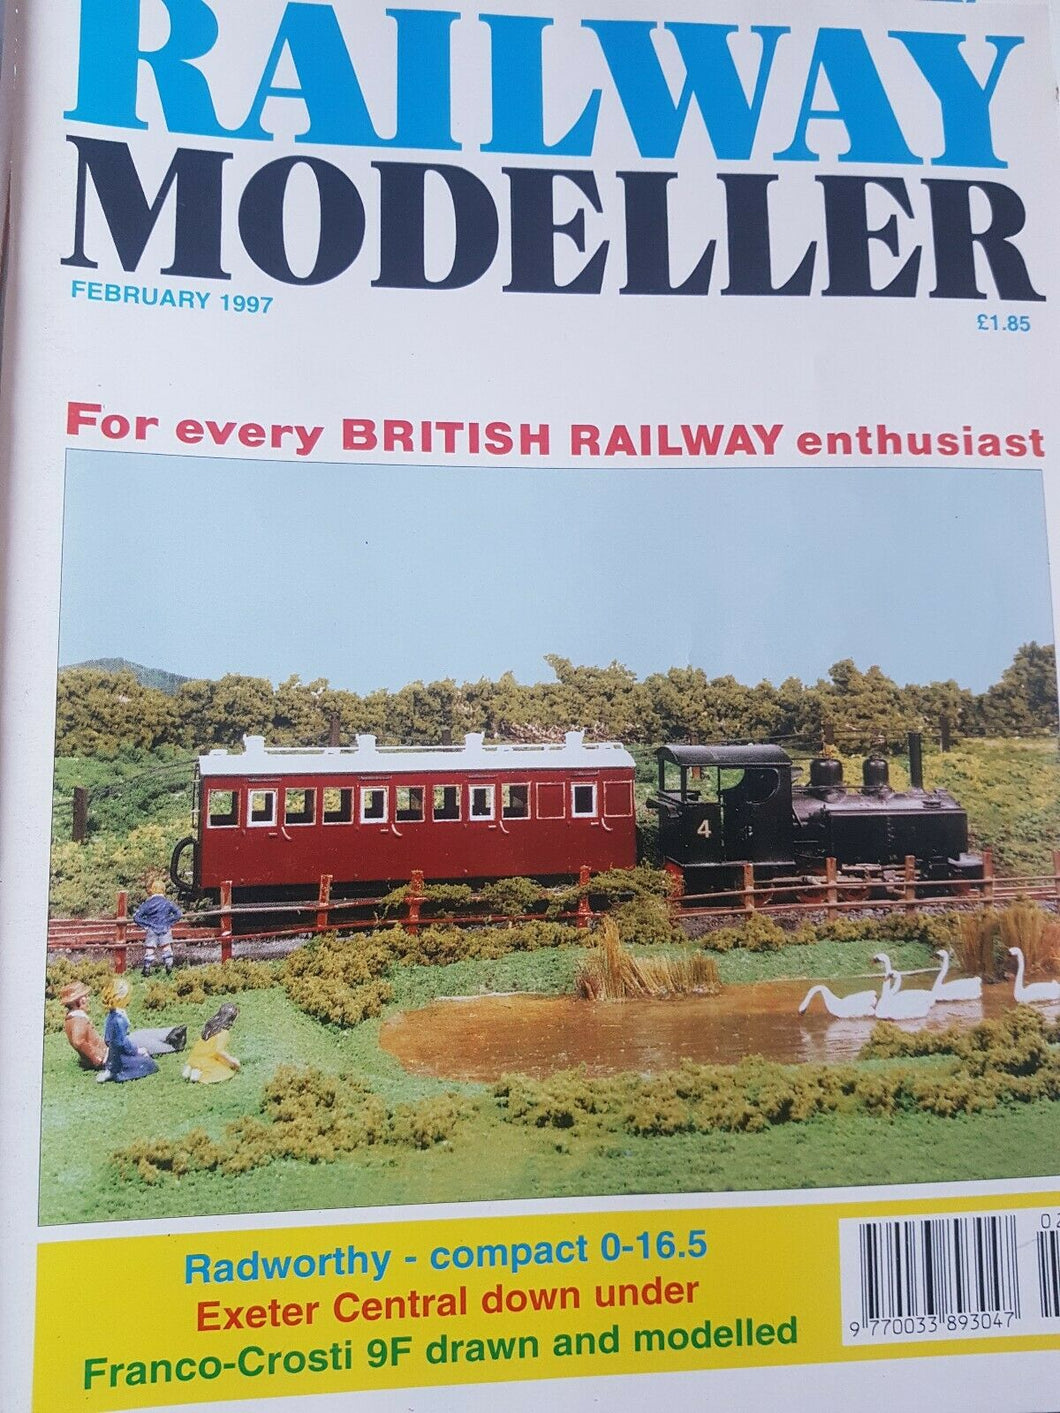 Railway modeller magazine February 1997